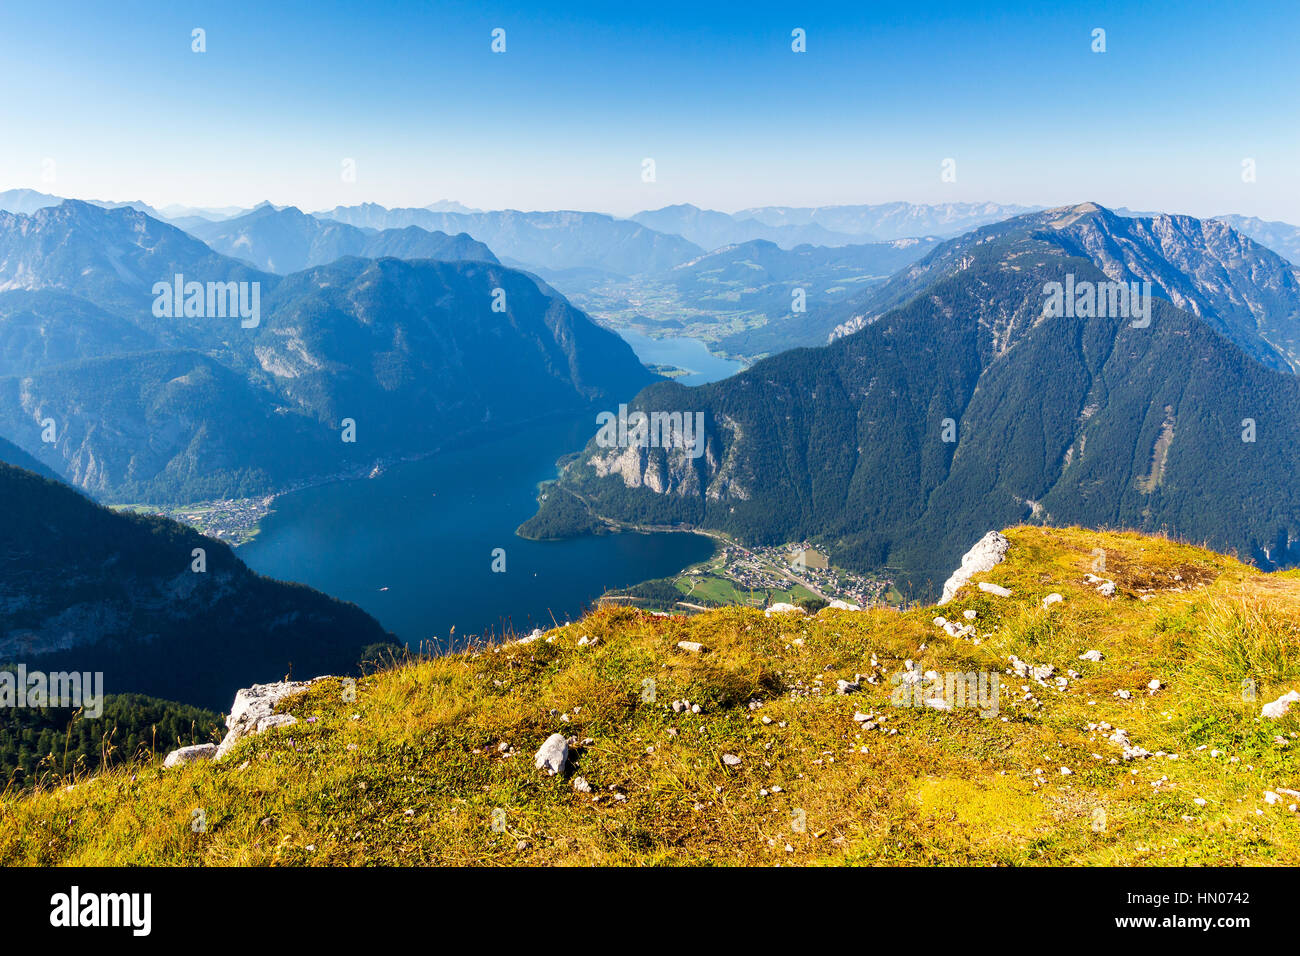 Panoramablick auf die Alpen und den See Hallstatt anzeigen Plattform Five Fingers am Dachstein-Massiv. Stockfoto